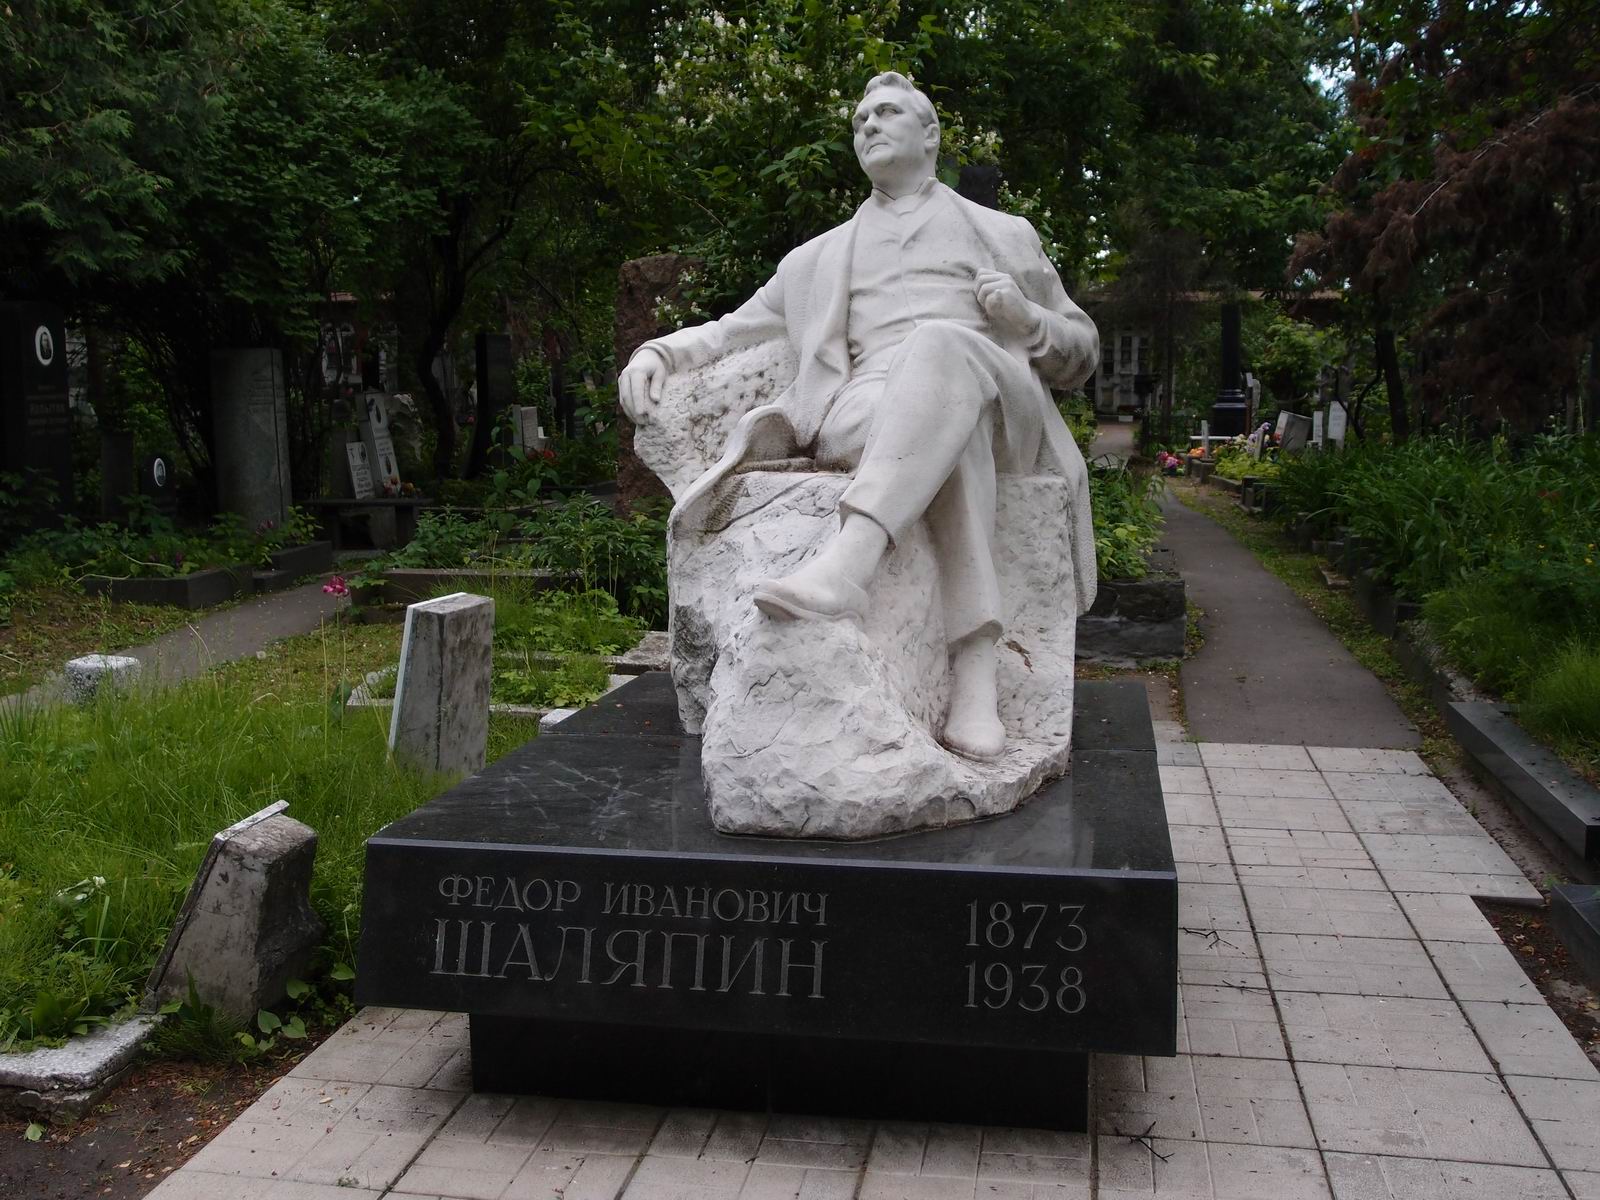 Памятник на могиле Шаляпина Ф.И. (1873-1938), ск. А.Елецкий, арх. Ю.Воскресенский, на Новодевичьем кладбище (4-49-1).